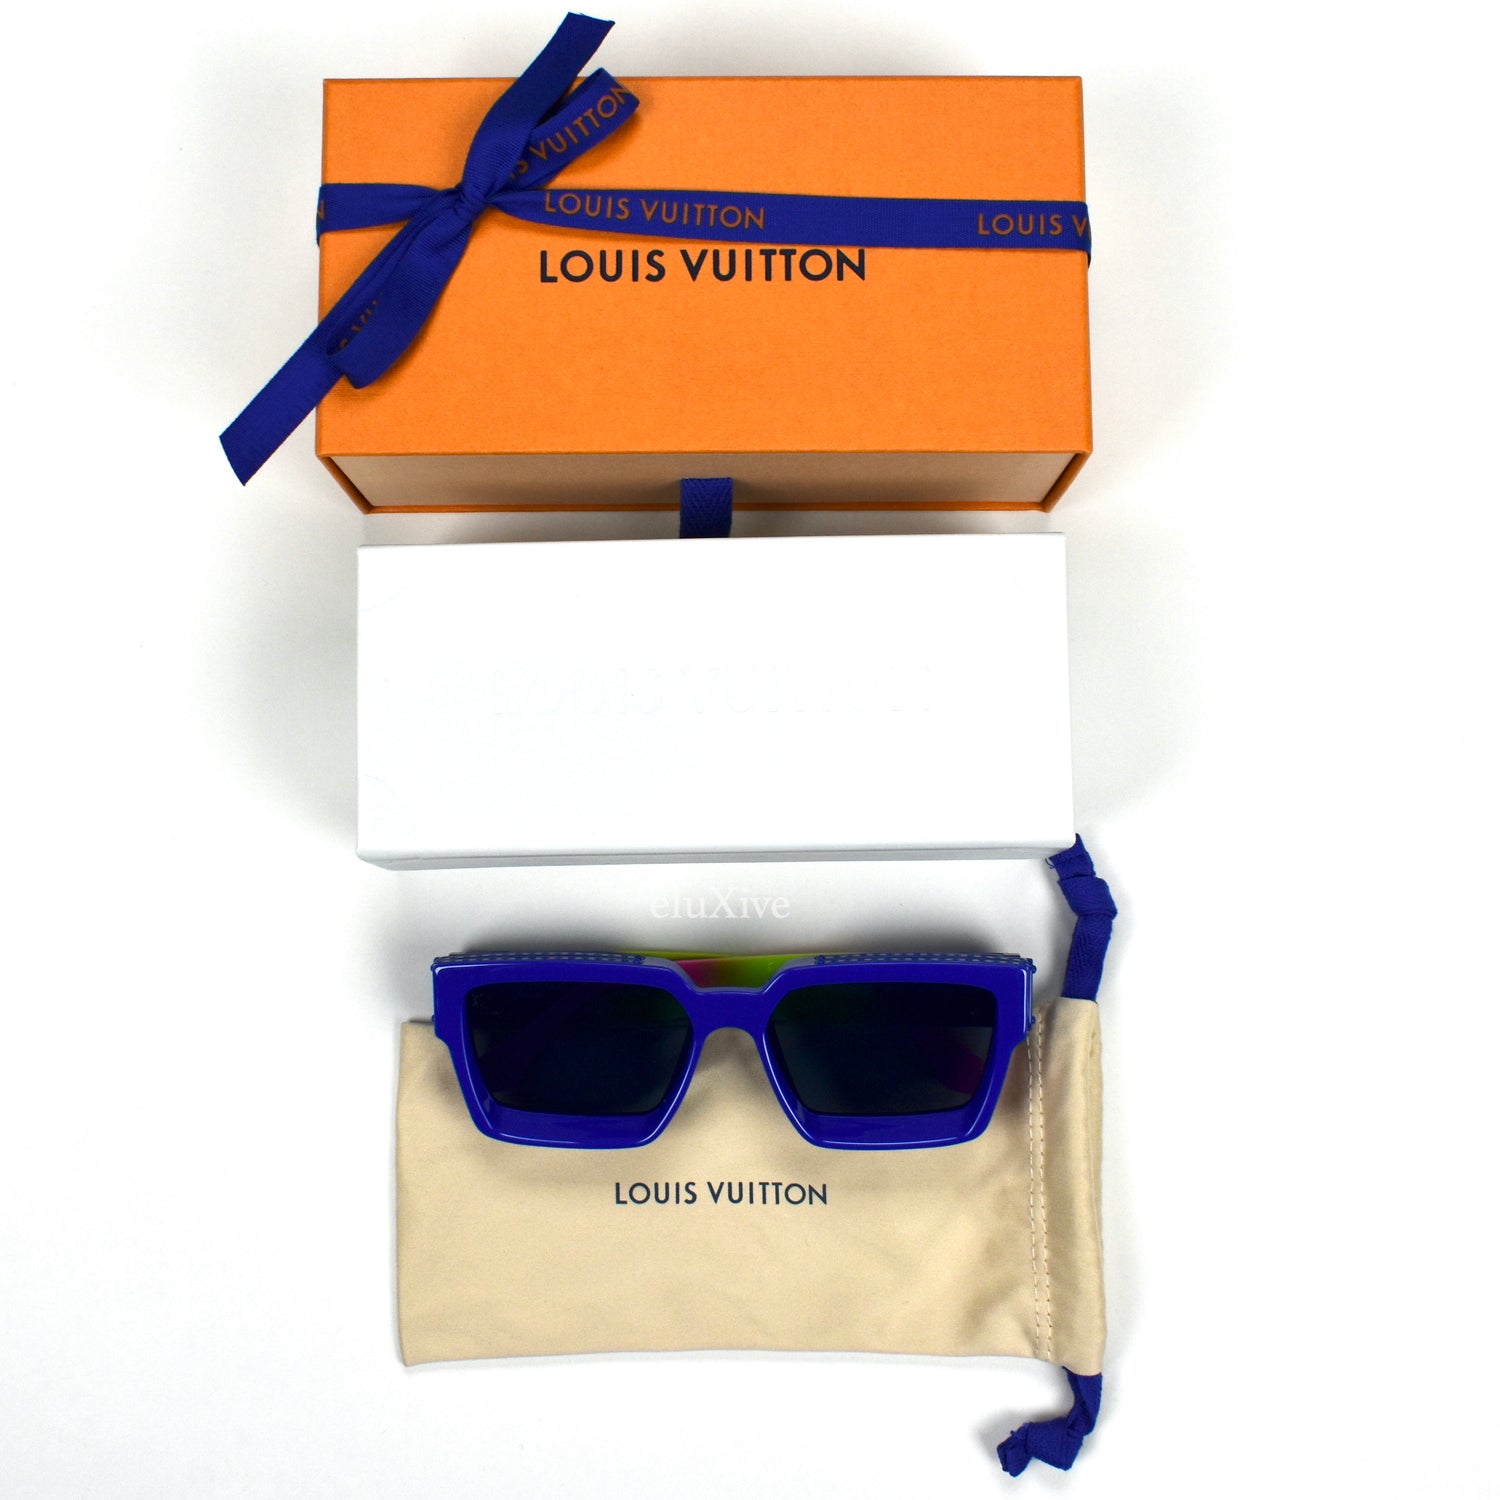 Louis Vuitton Black 1.1 Millionaires Sunglasses Square